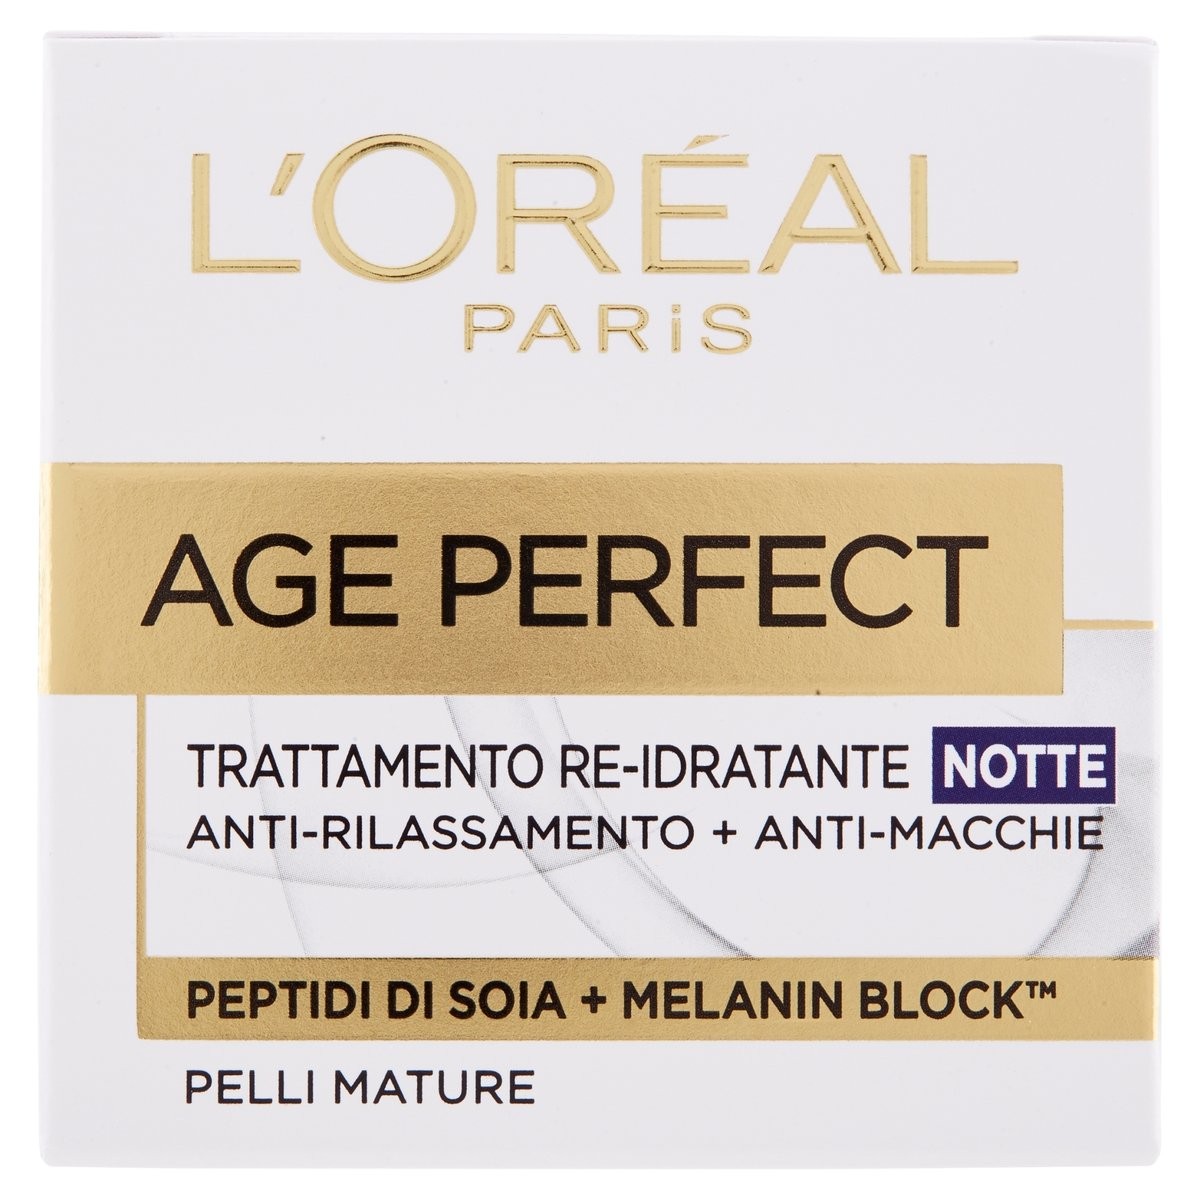 L'Oréal Paris Crema viso Age Perfect Notte